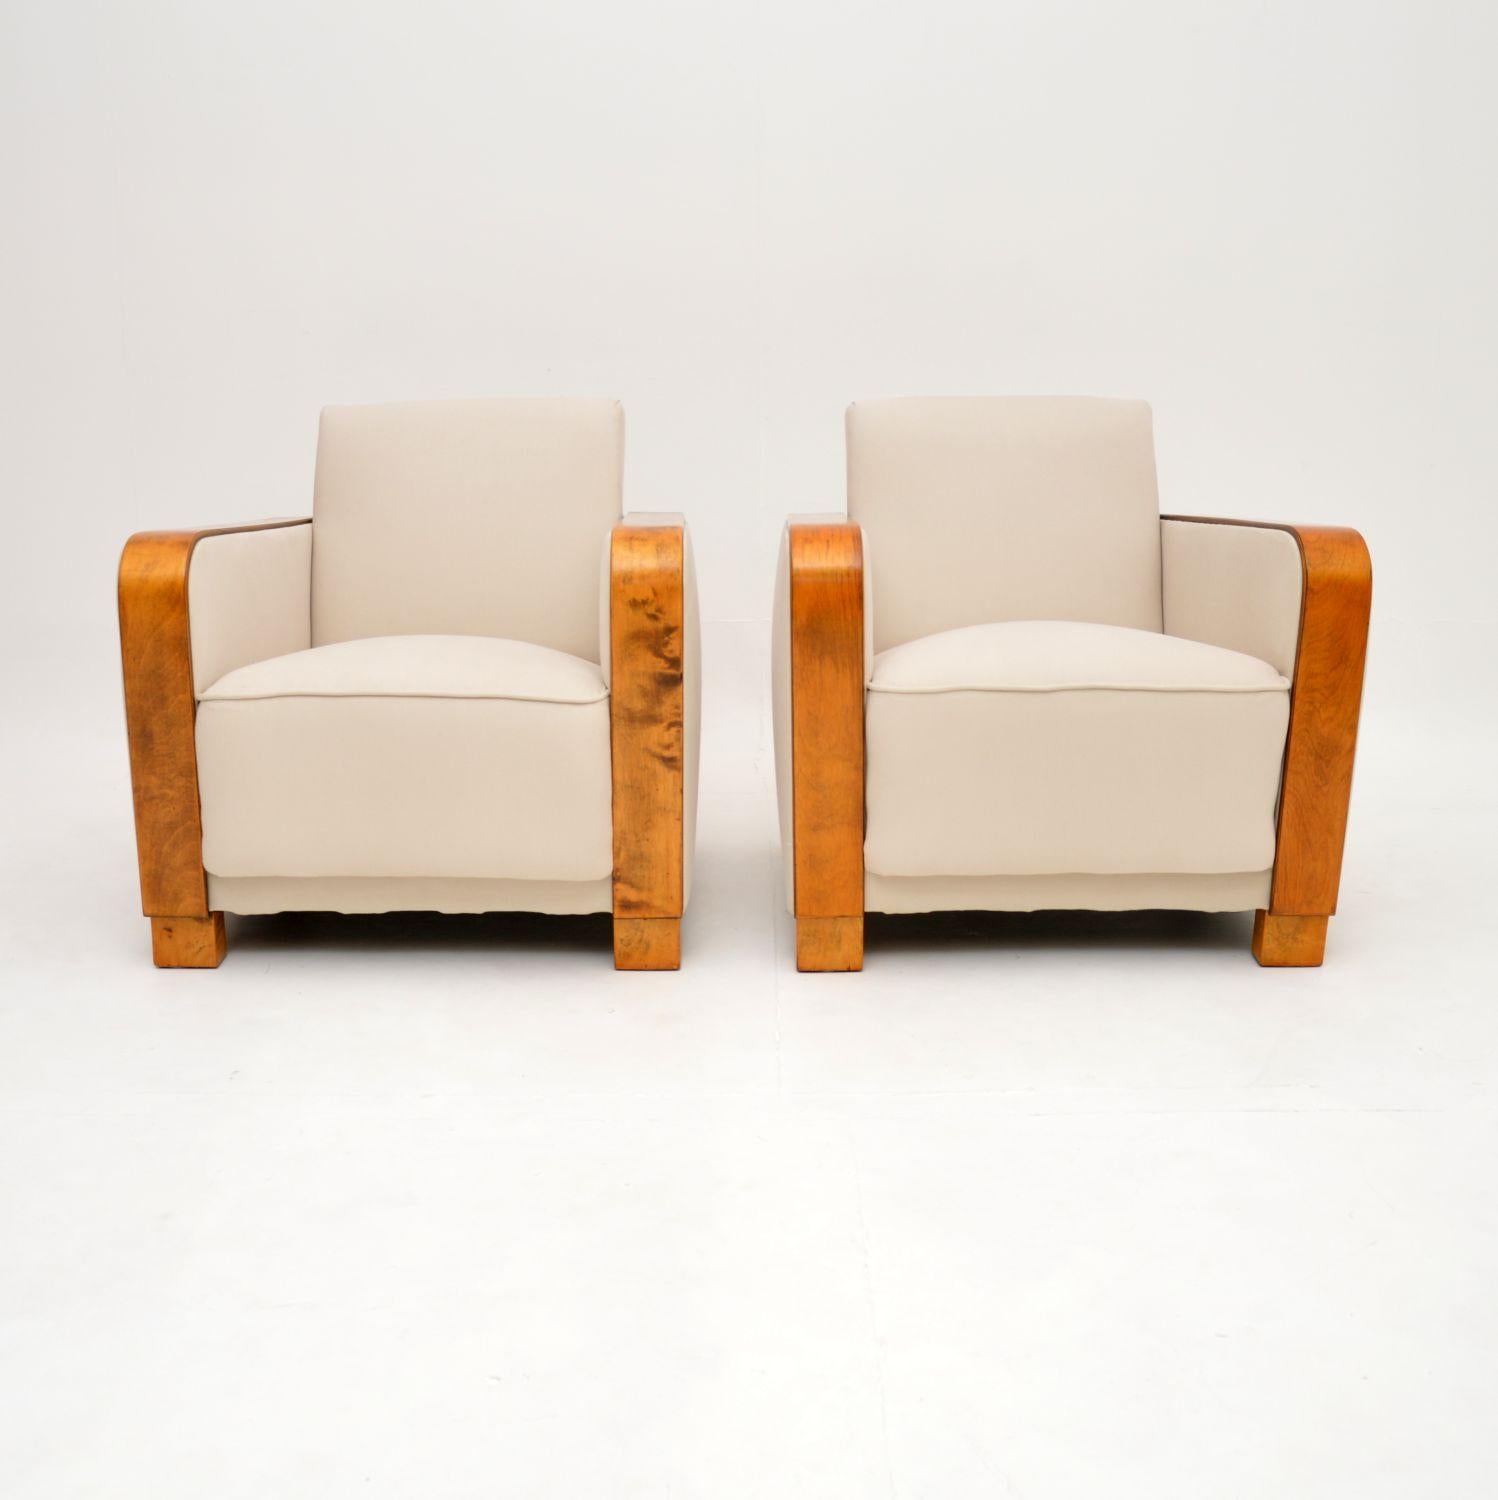 Une paire de fauteuils en bouleau satiné de style Art Déco très élégante et extrêmement bien faite. Fabriqués en Suède, ils datent des années 1920-30.

Ils ont un design très audacieux et magnifique et sont d'une superbe qualité. Les bras en bouleau